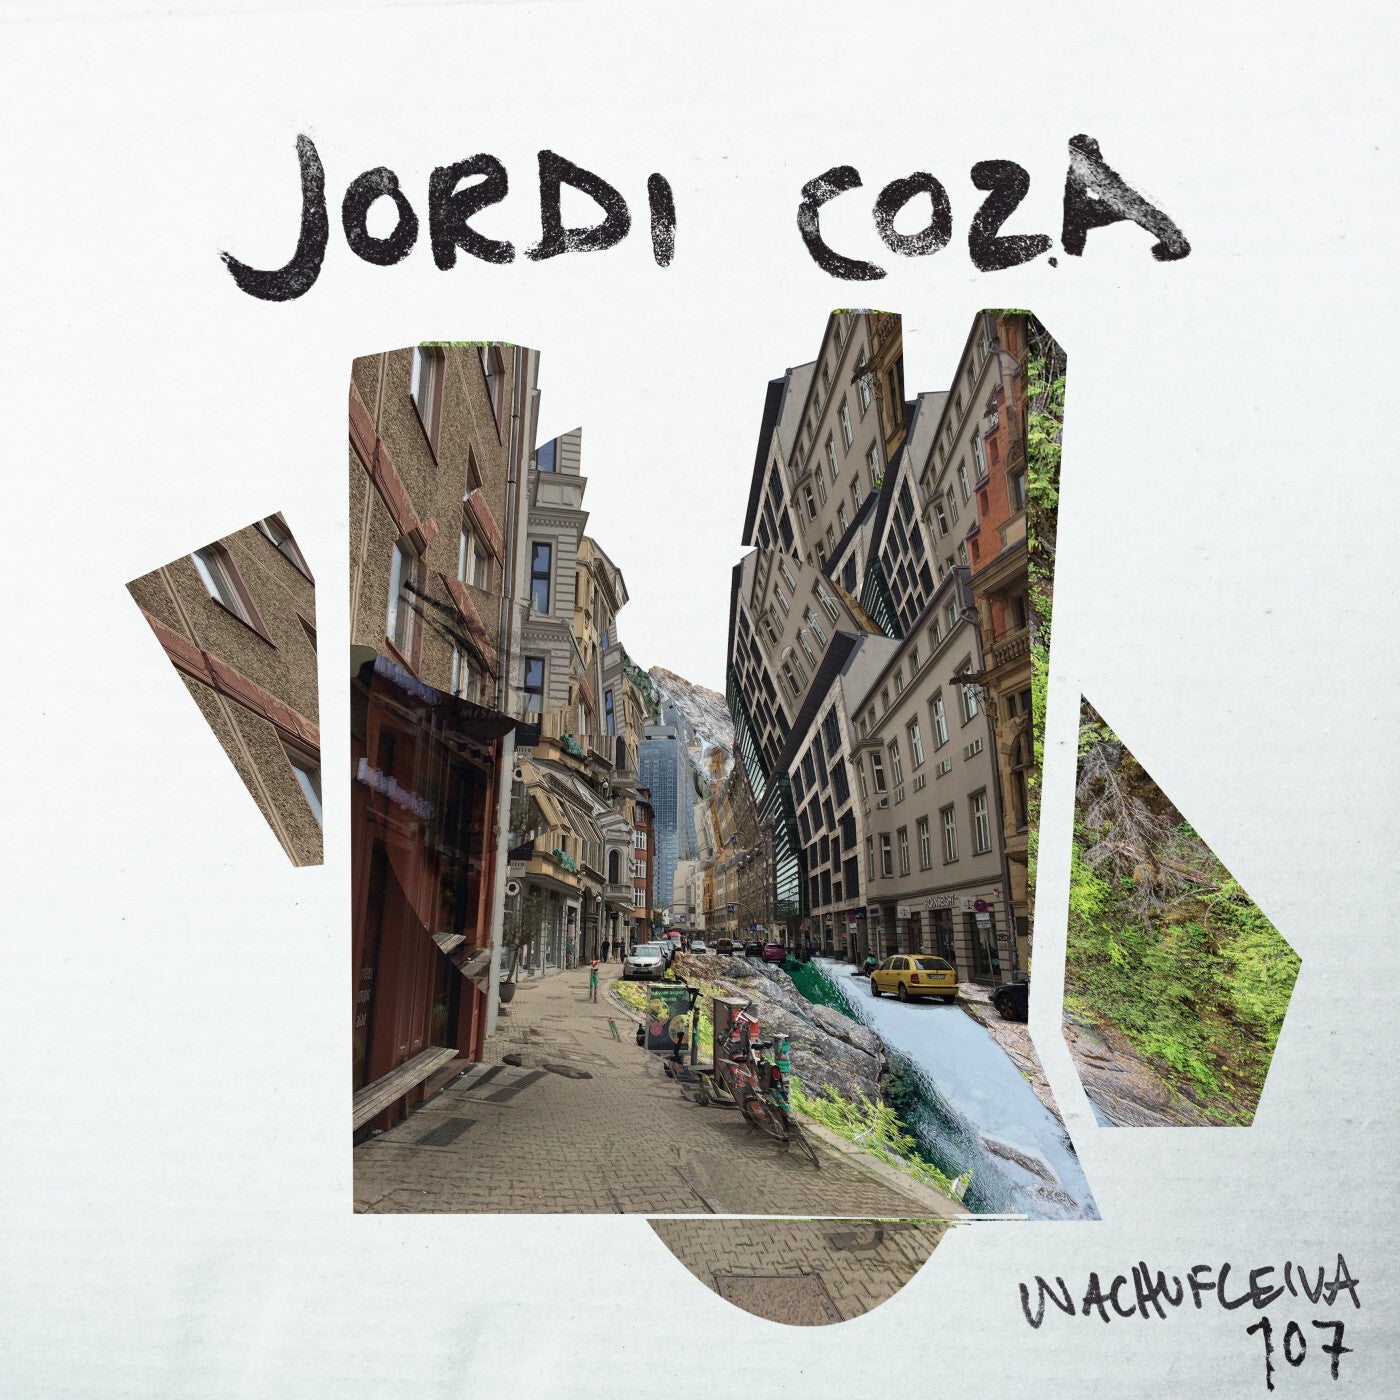 Jordi Coza – Wachufleiva 107 [W107]